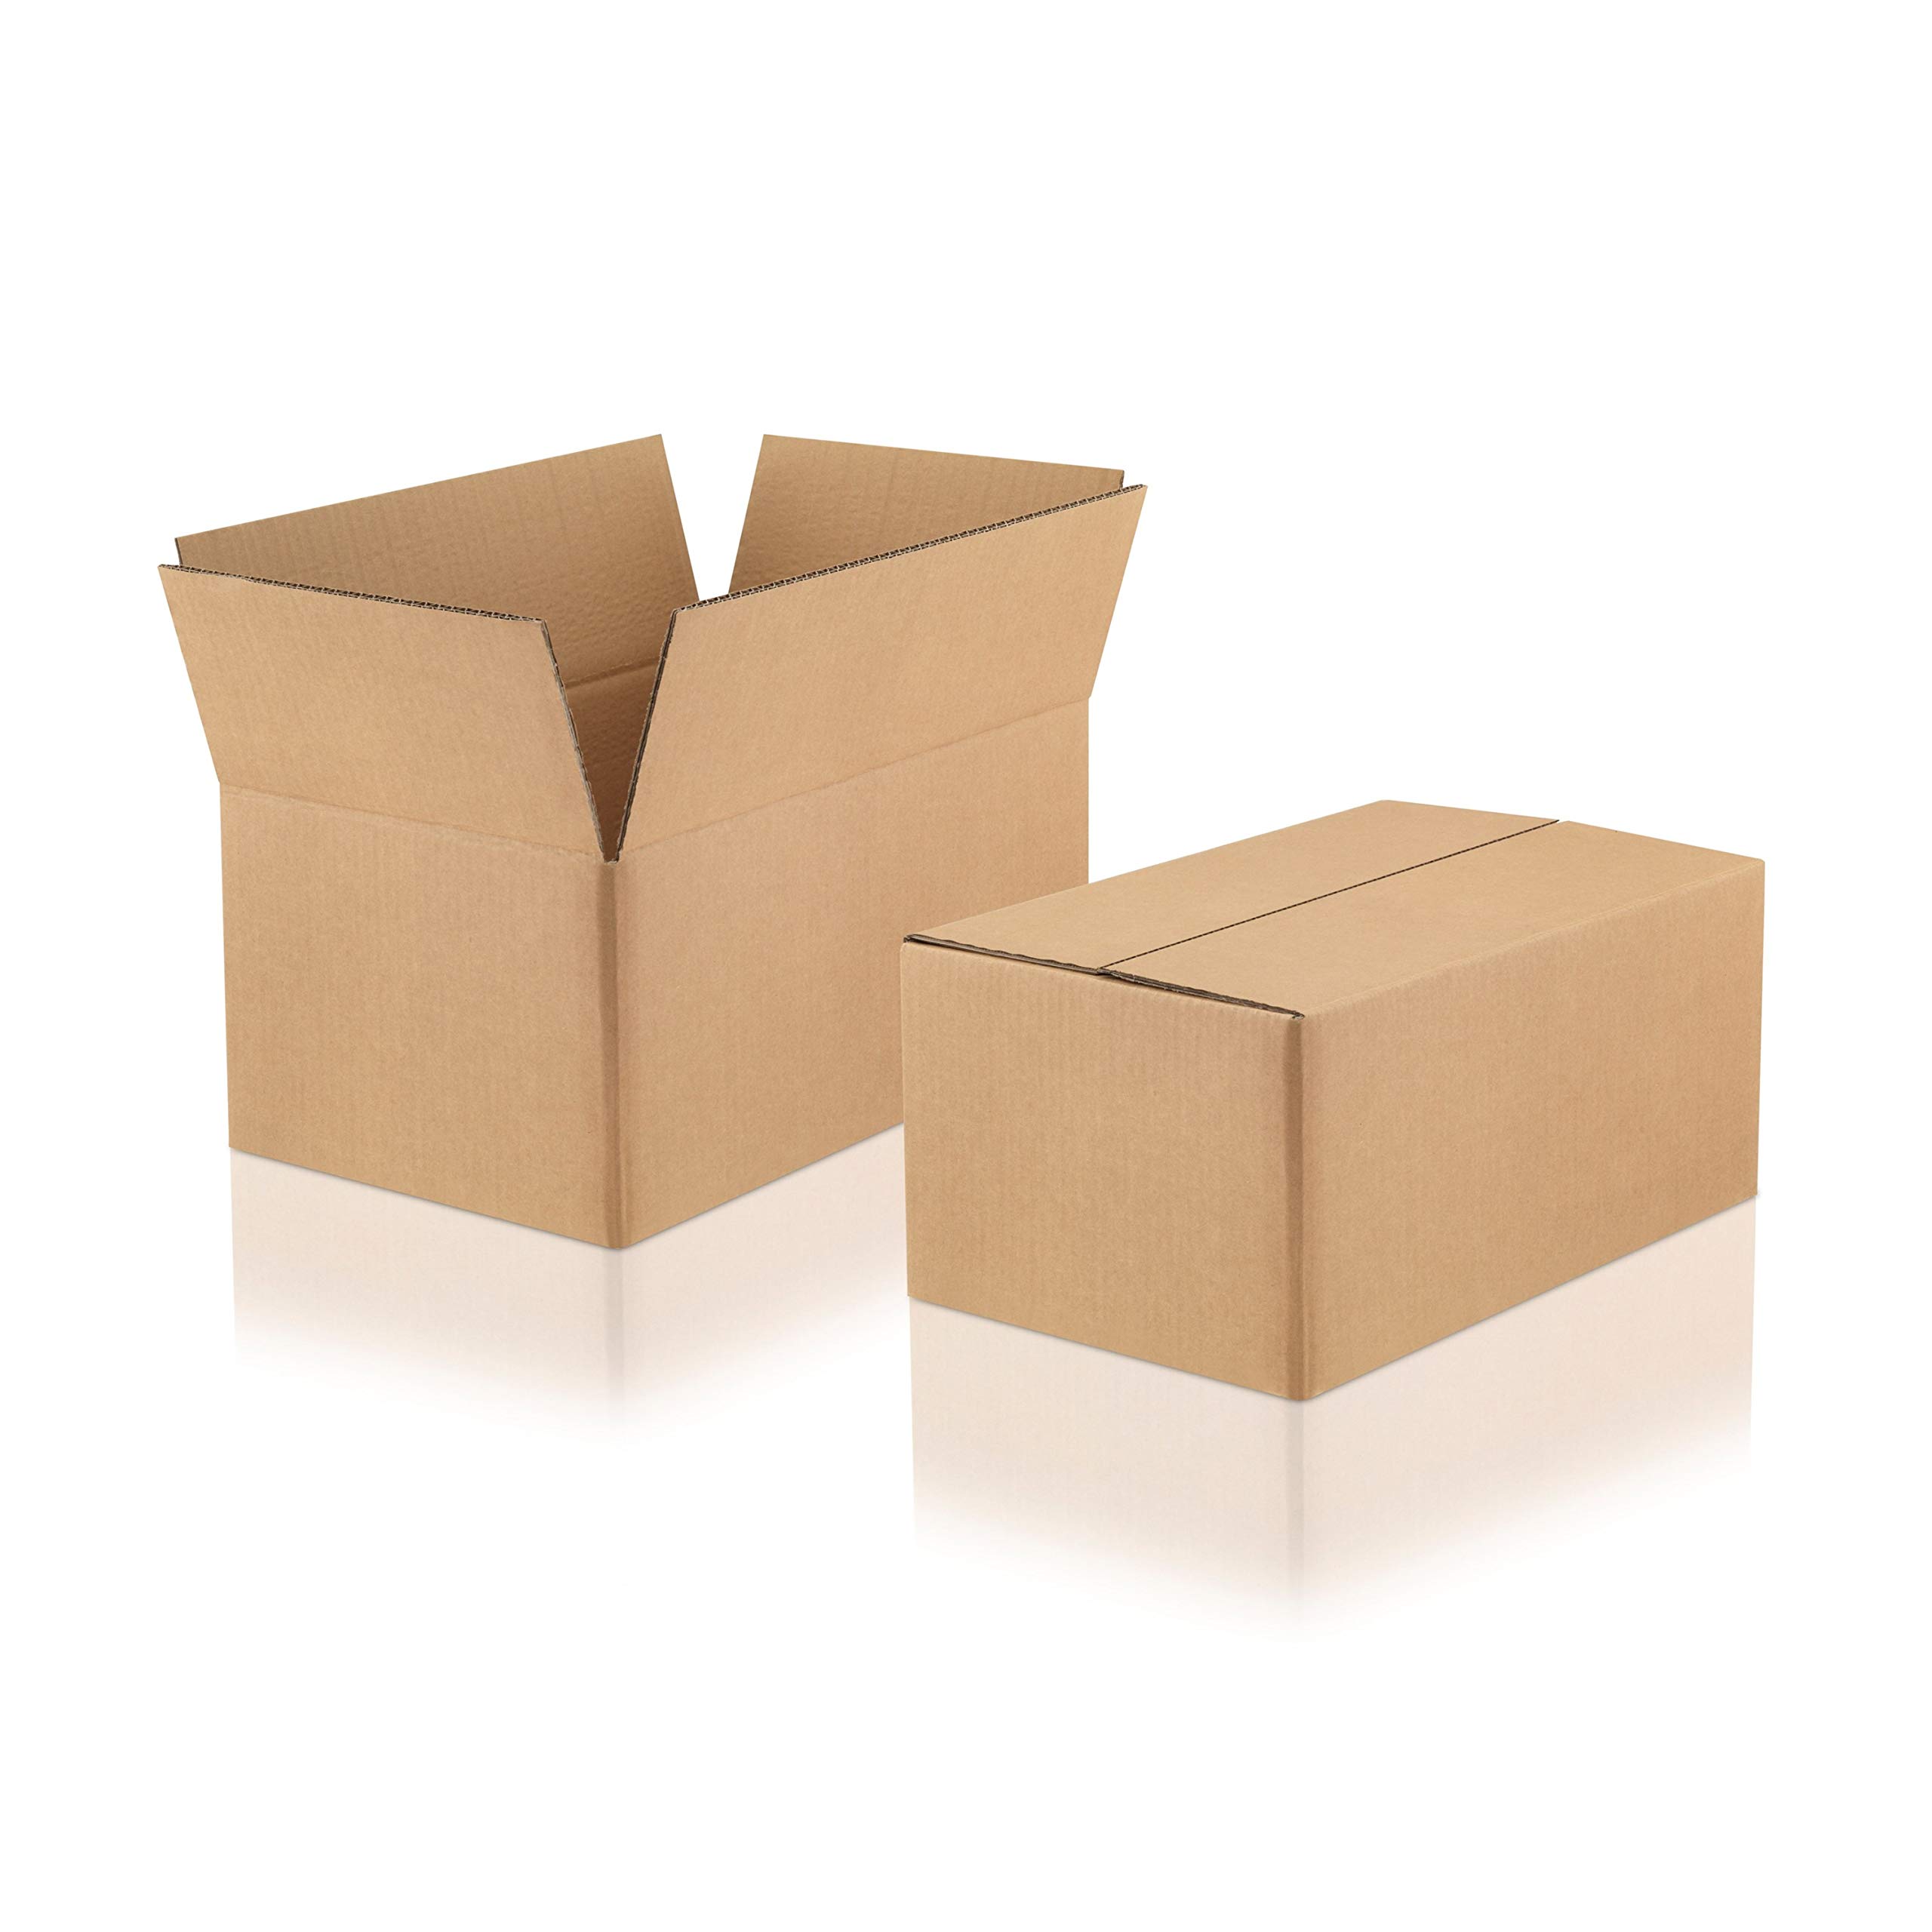 WPTrading - 20 Stück Versandkarton 2-wellig 380 x 280 x 300 mm Wellpappe (Nr. 2W-41D) Braun - Pappe Faltkarton für Warenversendung, Paket & Päckchen groß (L) - Karton Versandverpackung extra stabil